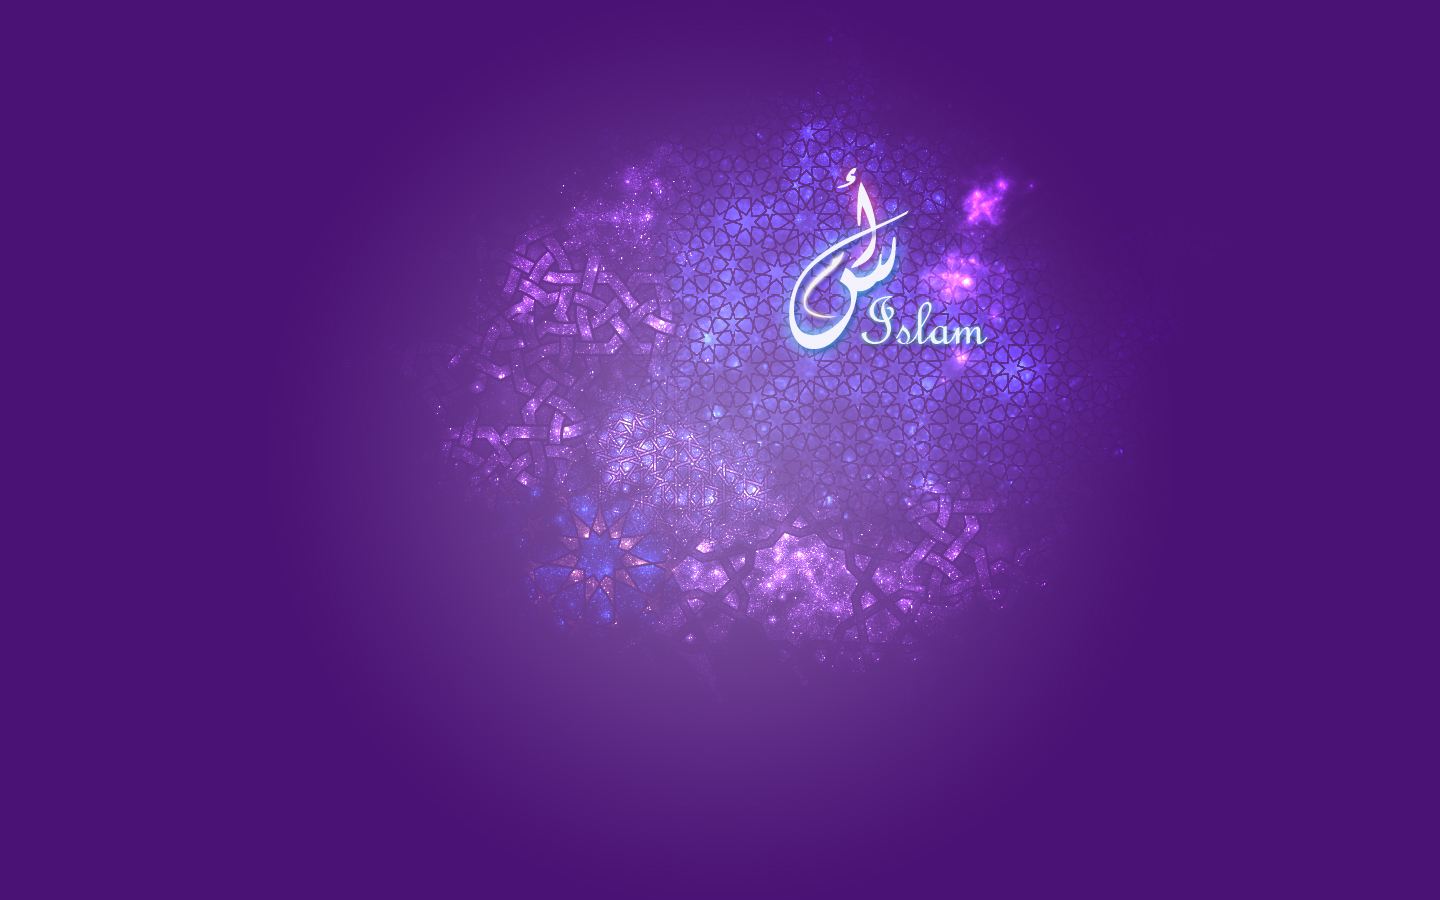 이슬람 사랑 배경,제비꽃,보라색,푸른,본문,빛